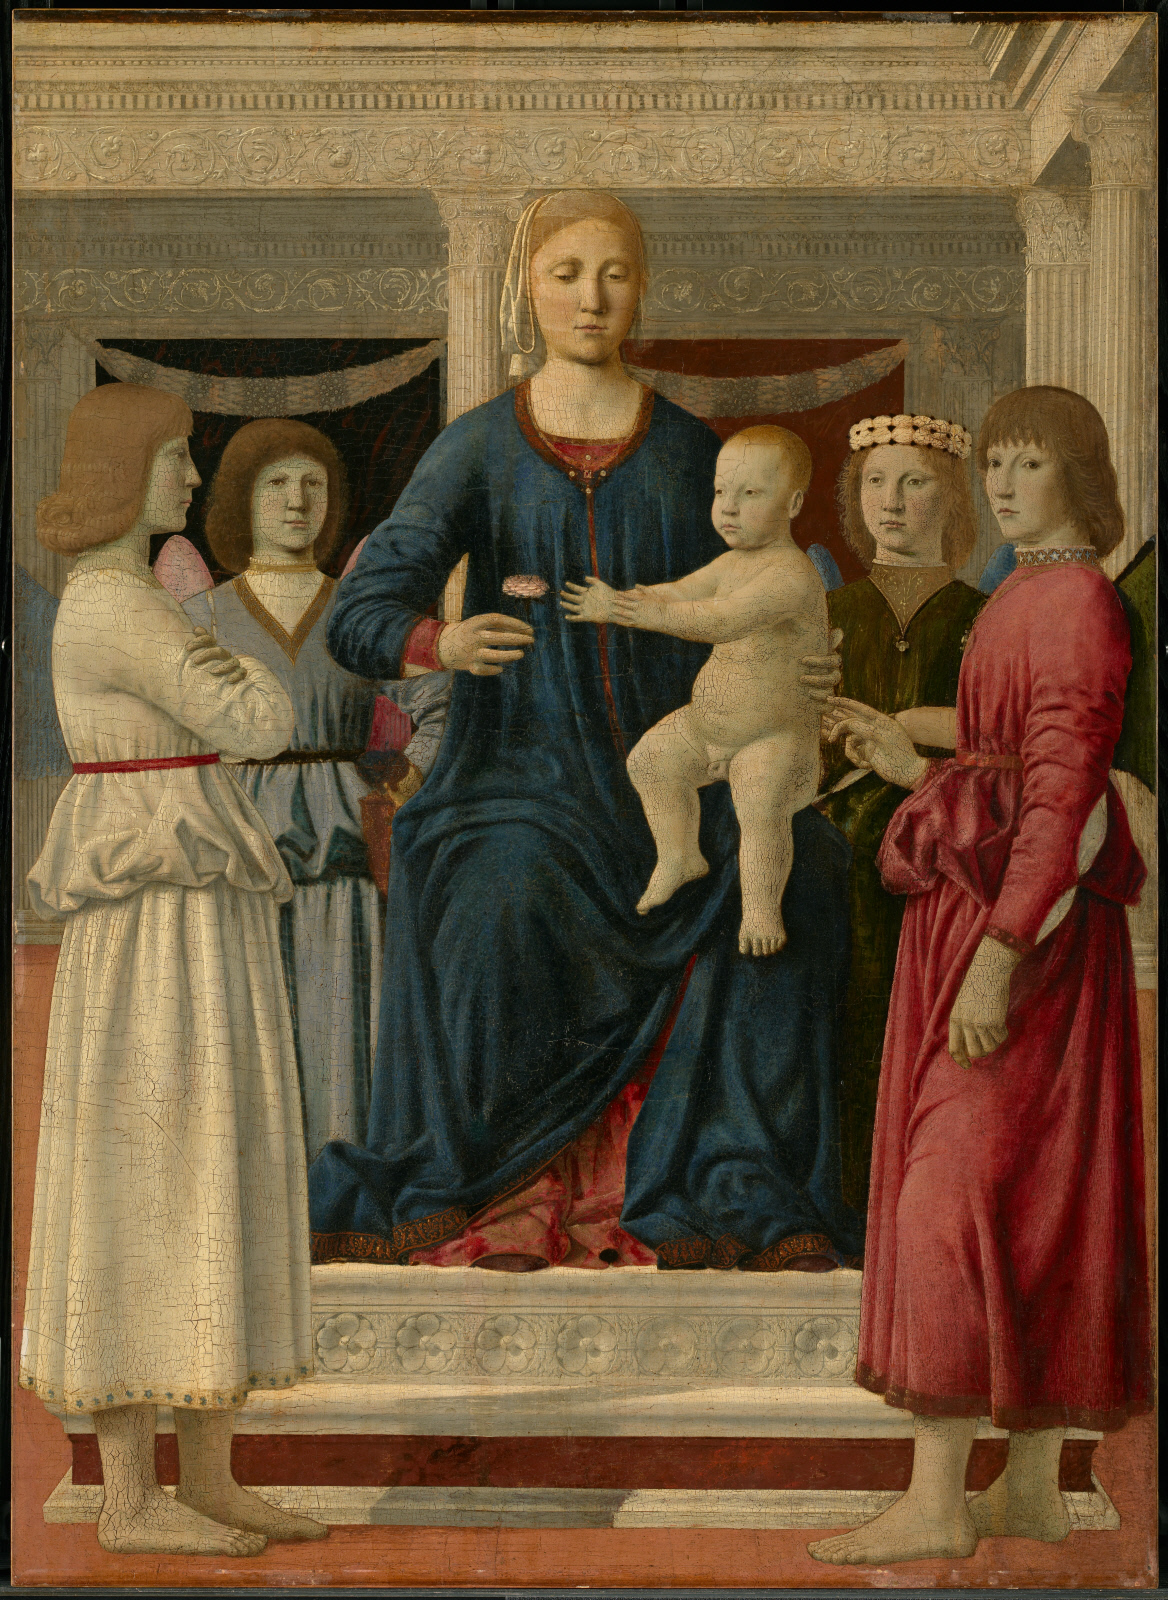 Vierge à l'enfant intronisée par quatre Anges by Piero della Francesca - c. 1460-70 - 107,8 x 78,4 cm The Clark